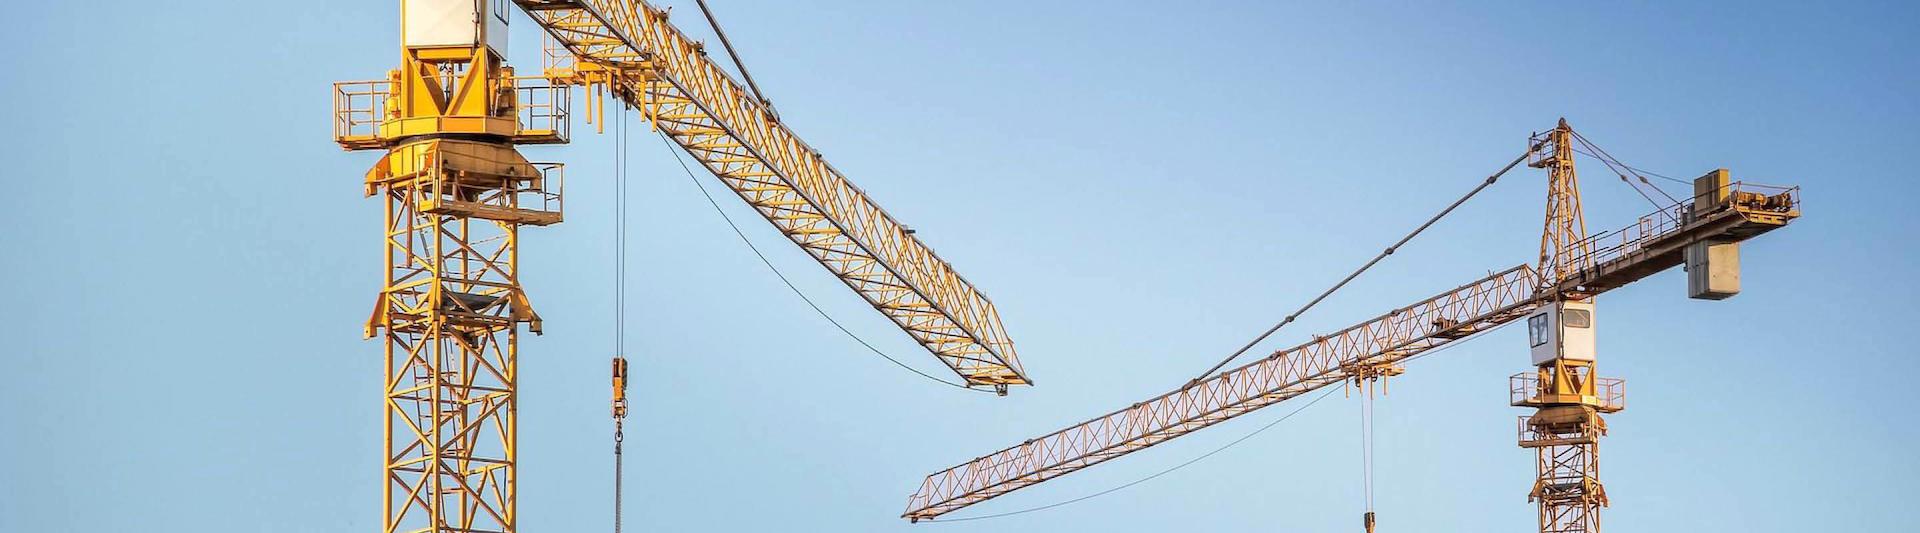 Two construction site cranes against blue sky.